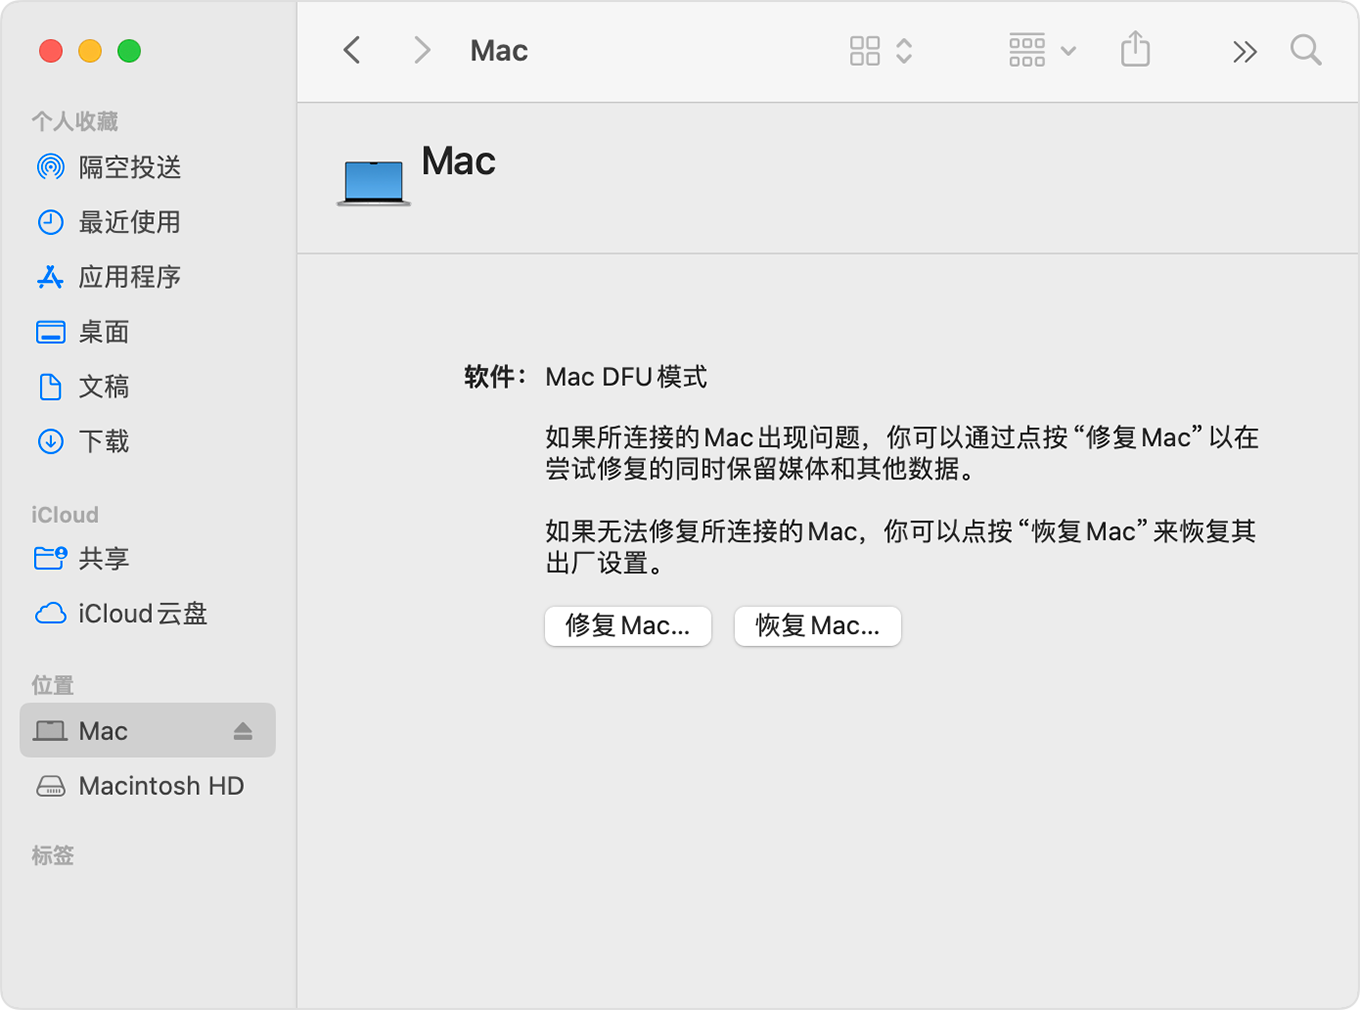 “访达”窗口中显示了已在边栏中选中“Mac”